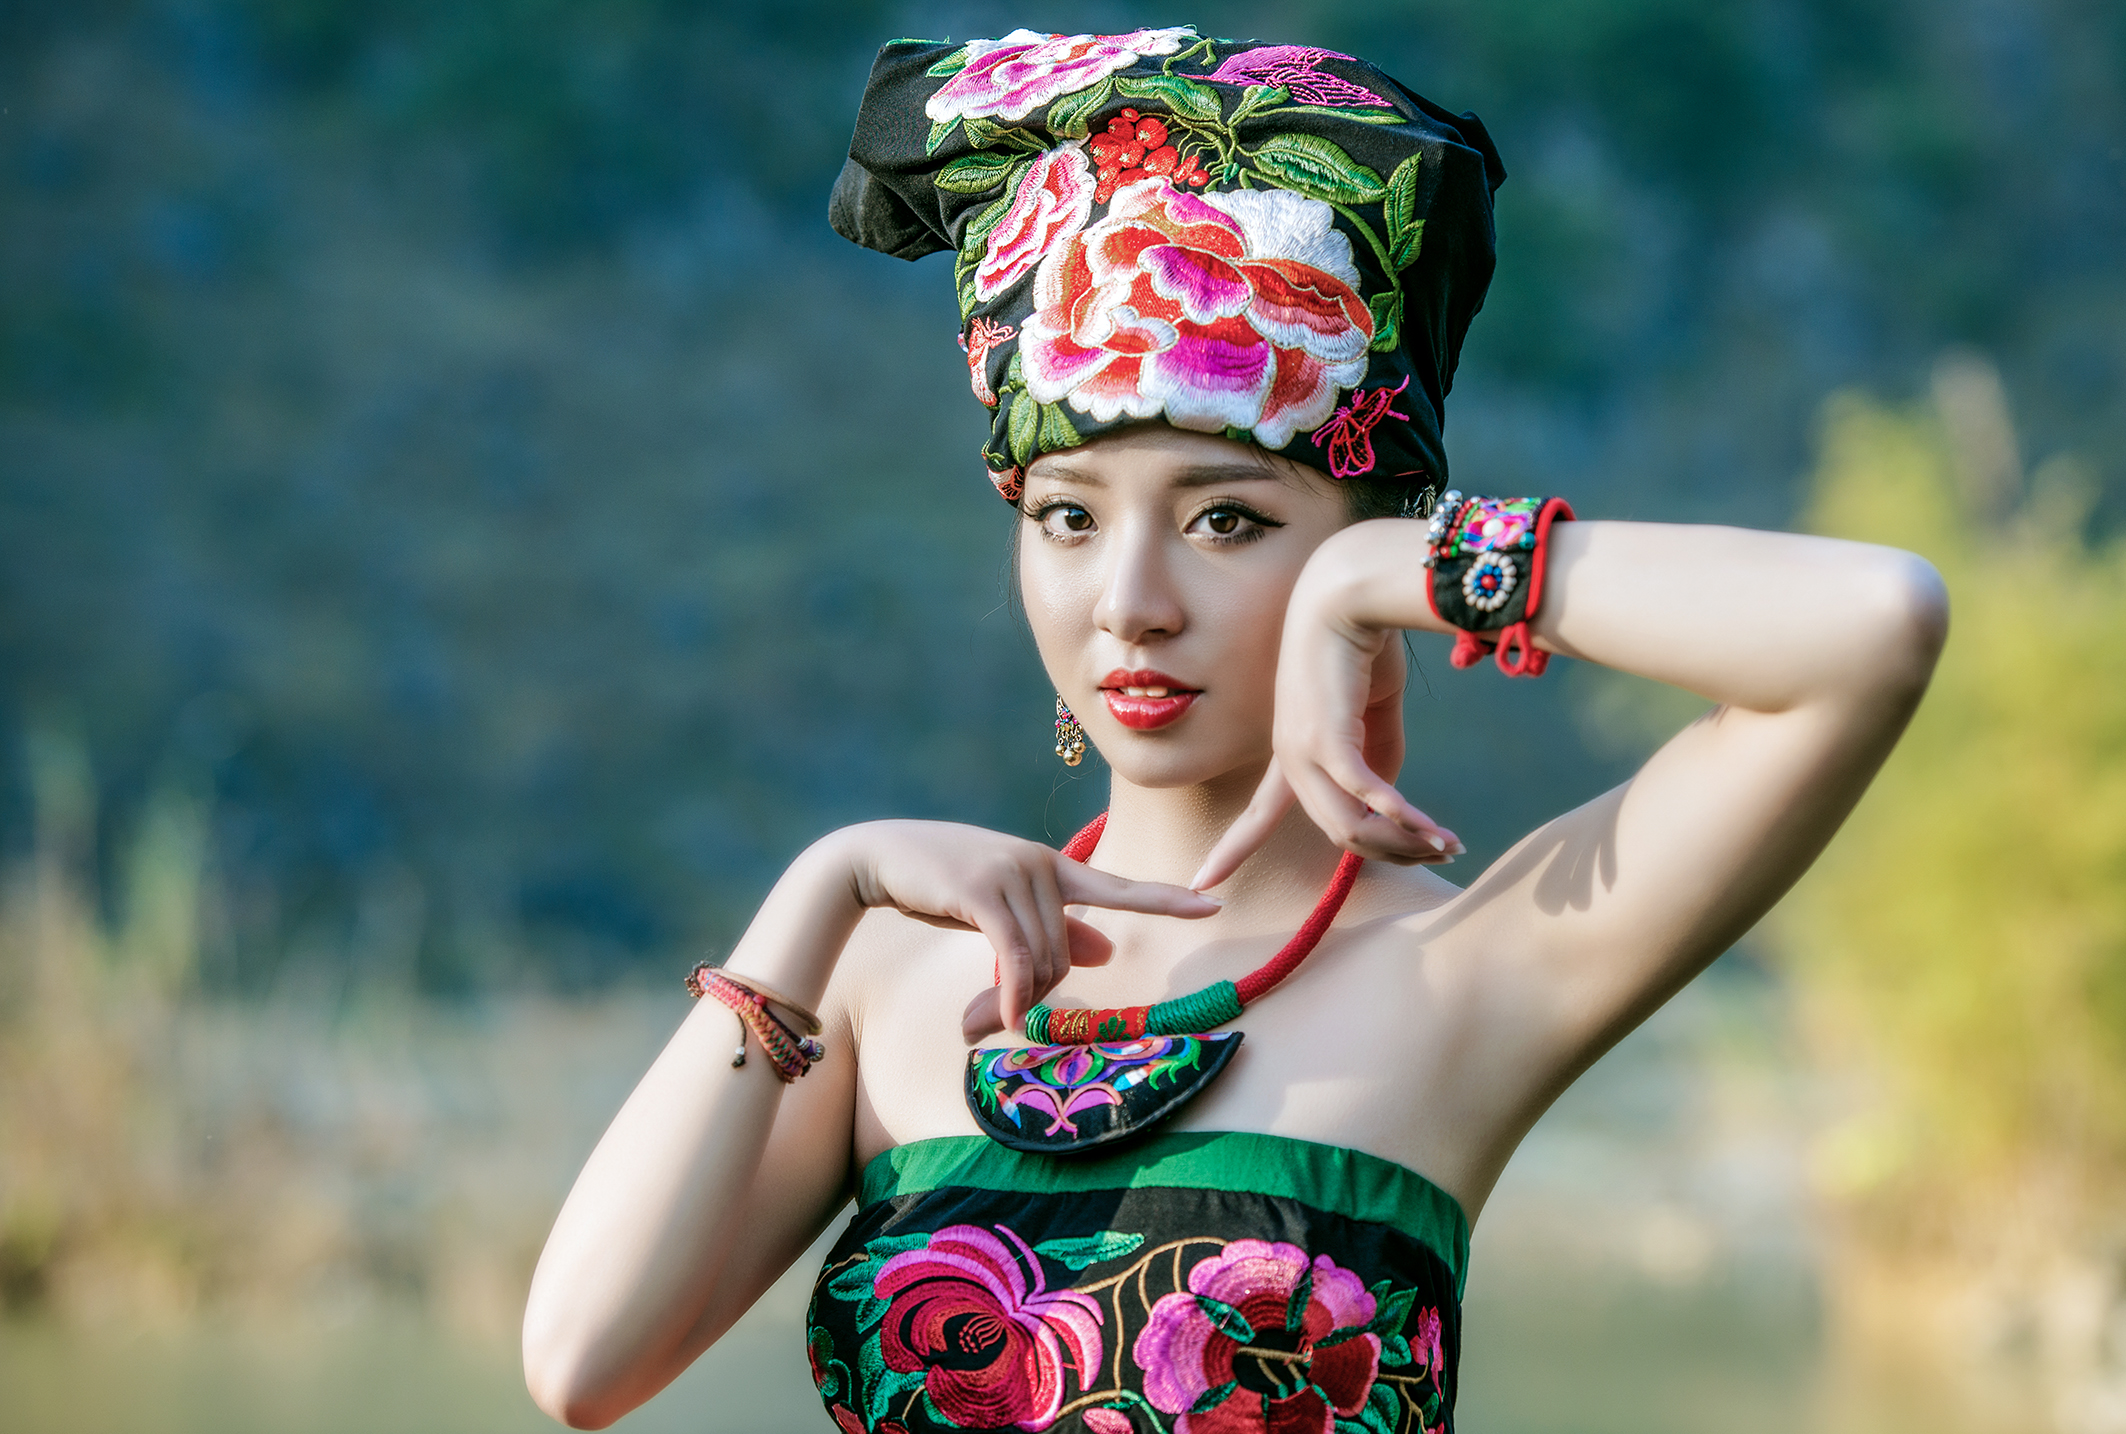 新款女装 藏族舞蹈服饰/秧歌服装/少数民族服饰/广场舞演出服批发-阿里巴巴